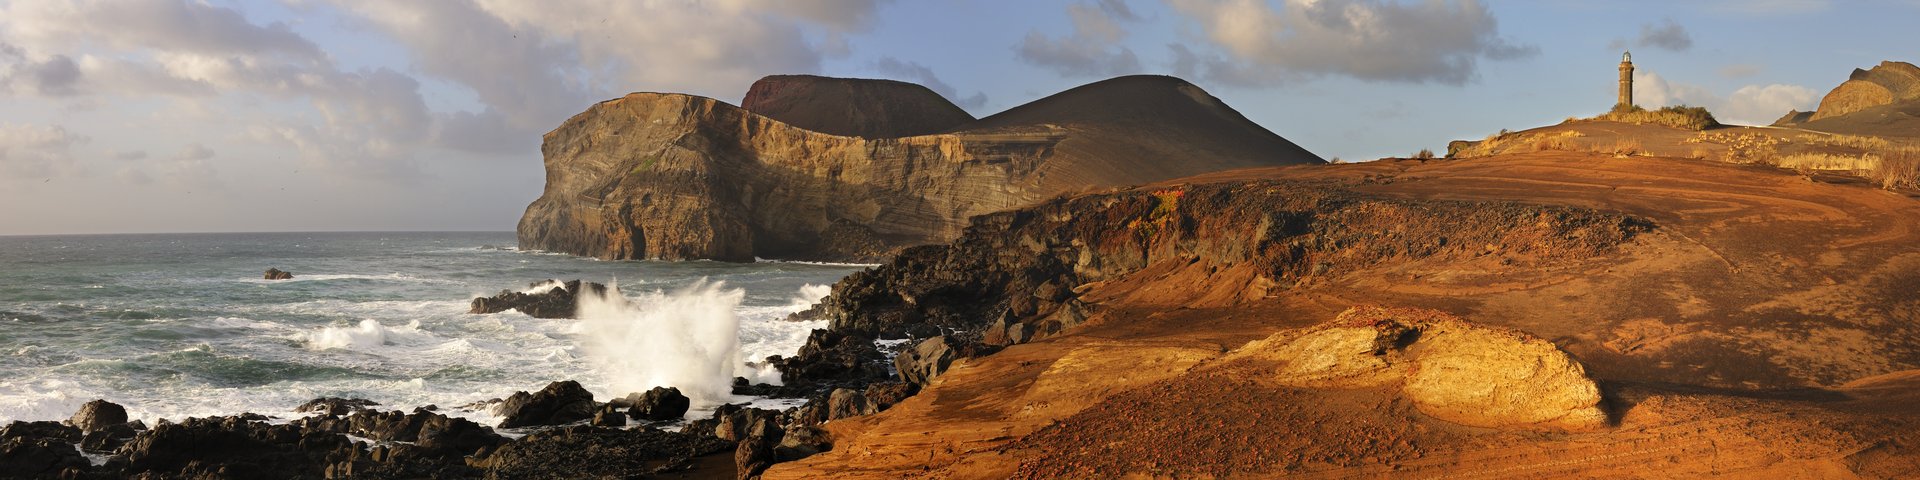 Vulkangebiet Capelinhos an der Meeresküste auf den Azoren